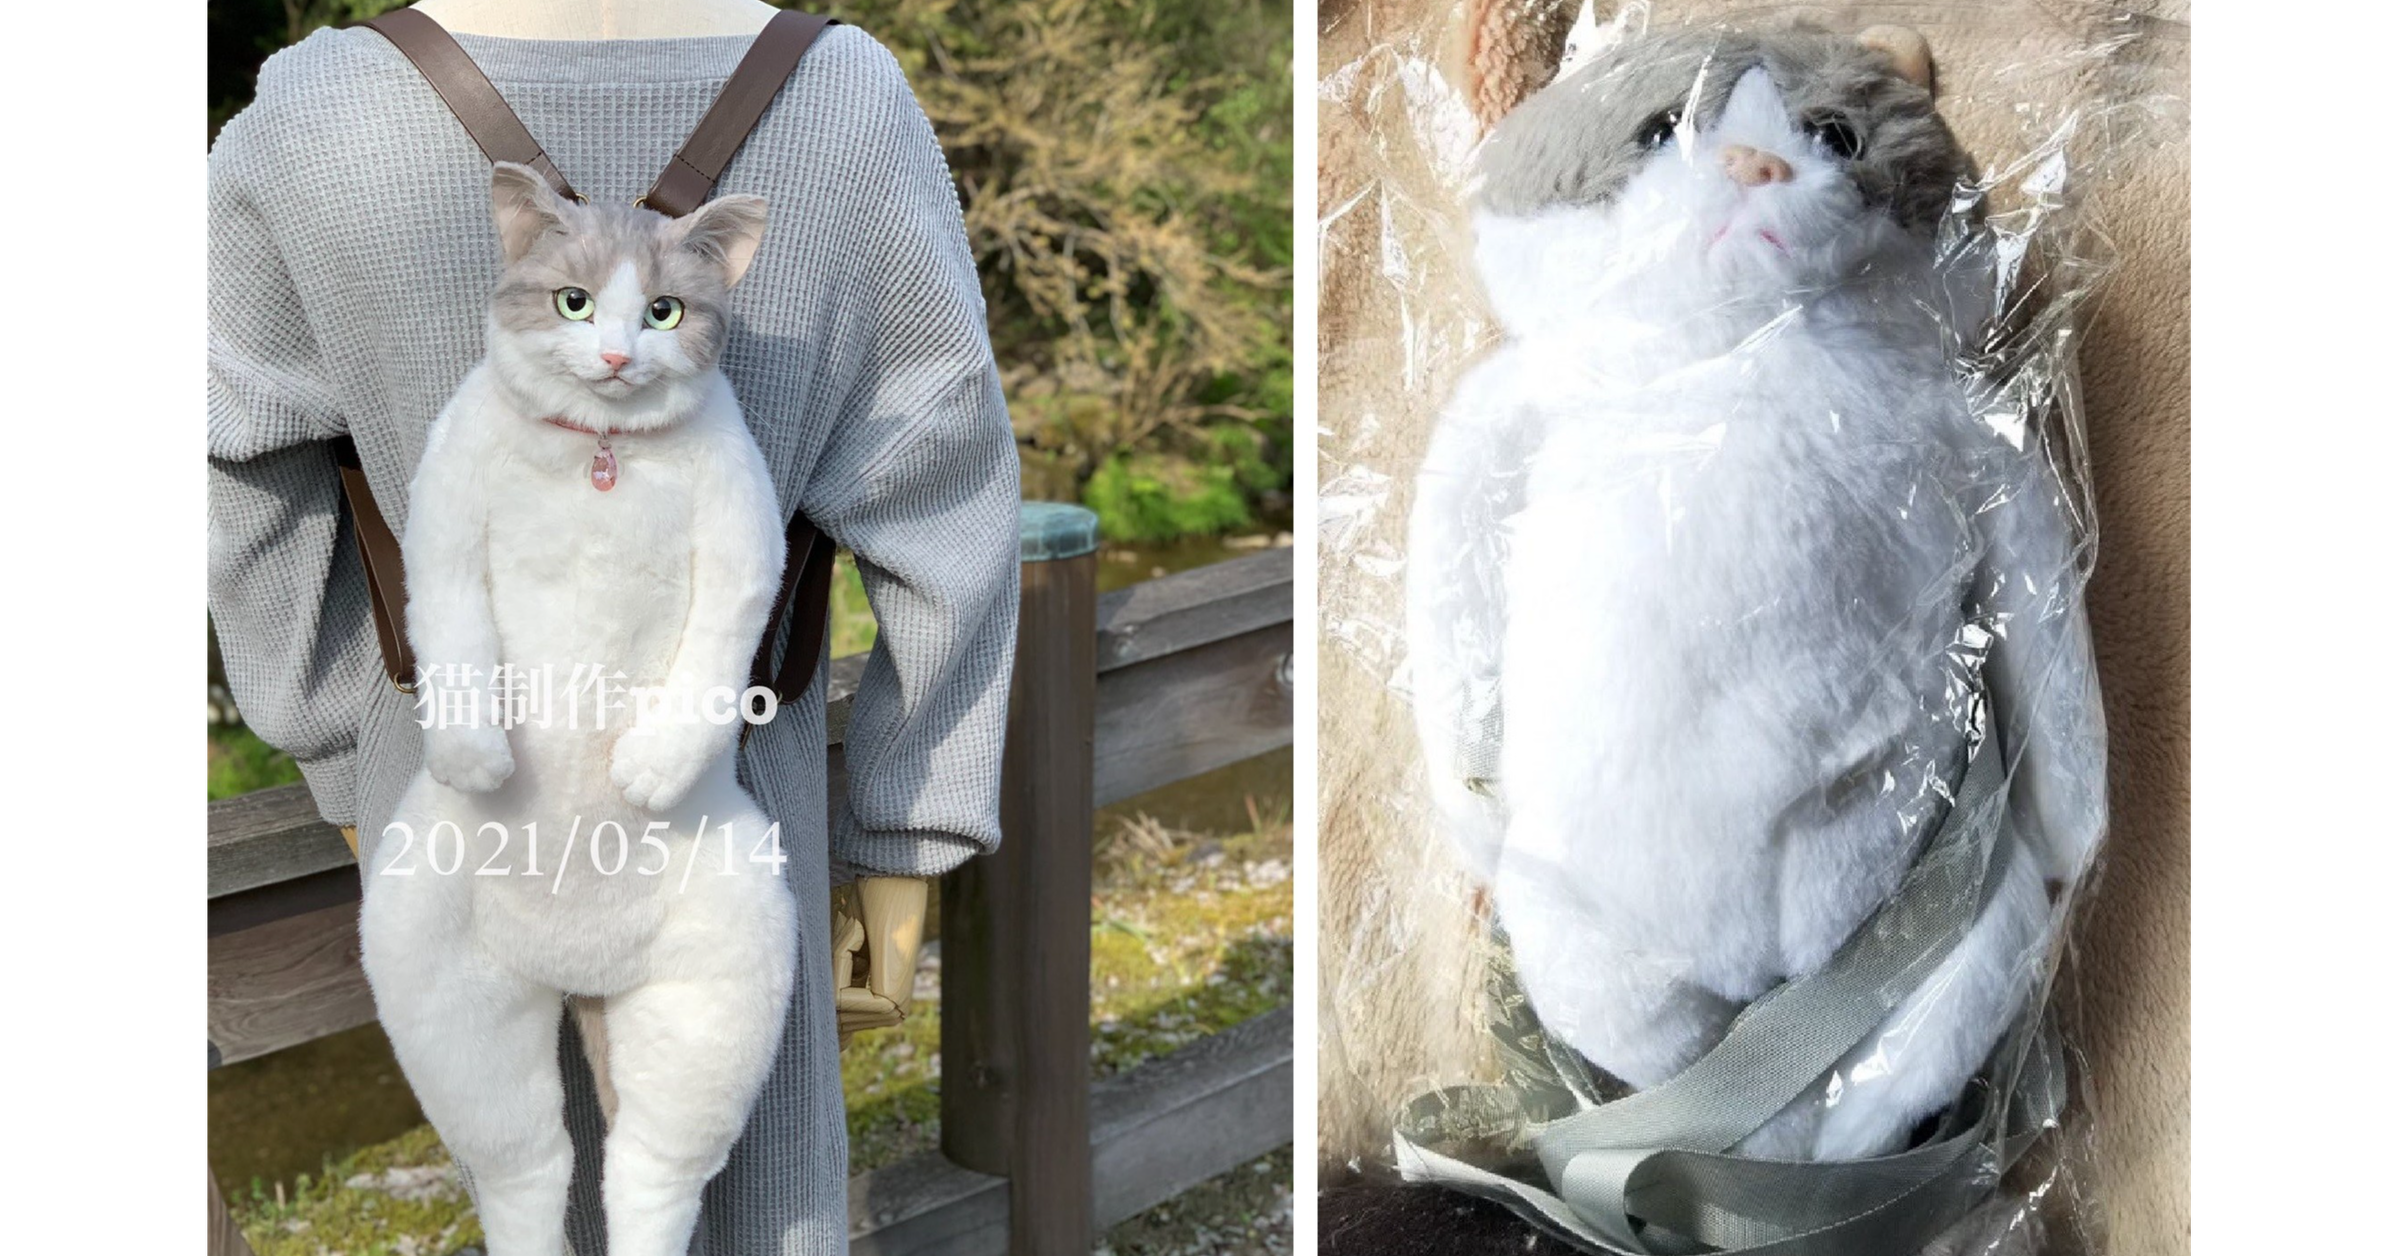 照片中提到了猫制作。、2021/05/14，包含了貓 リュック サック リアル、貓、背包、你的貓背包、Fat Cat 貓背包